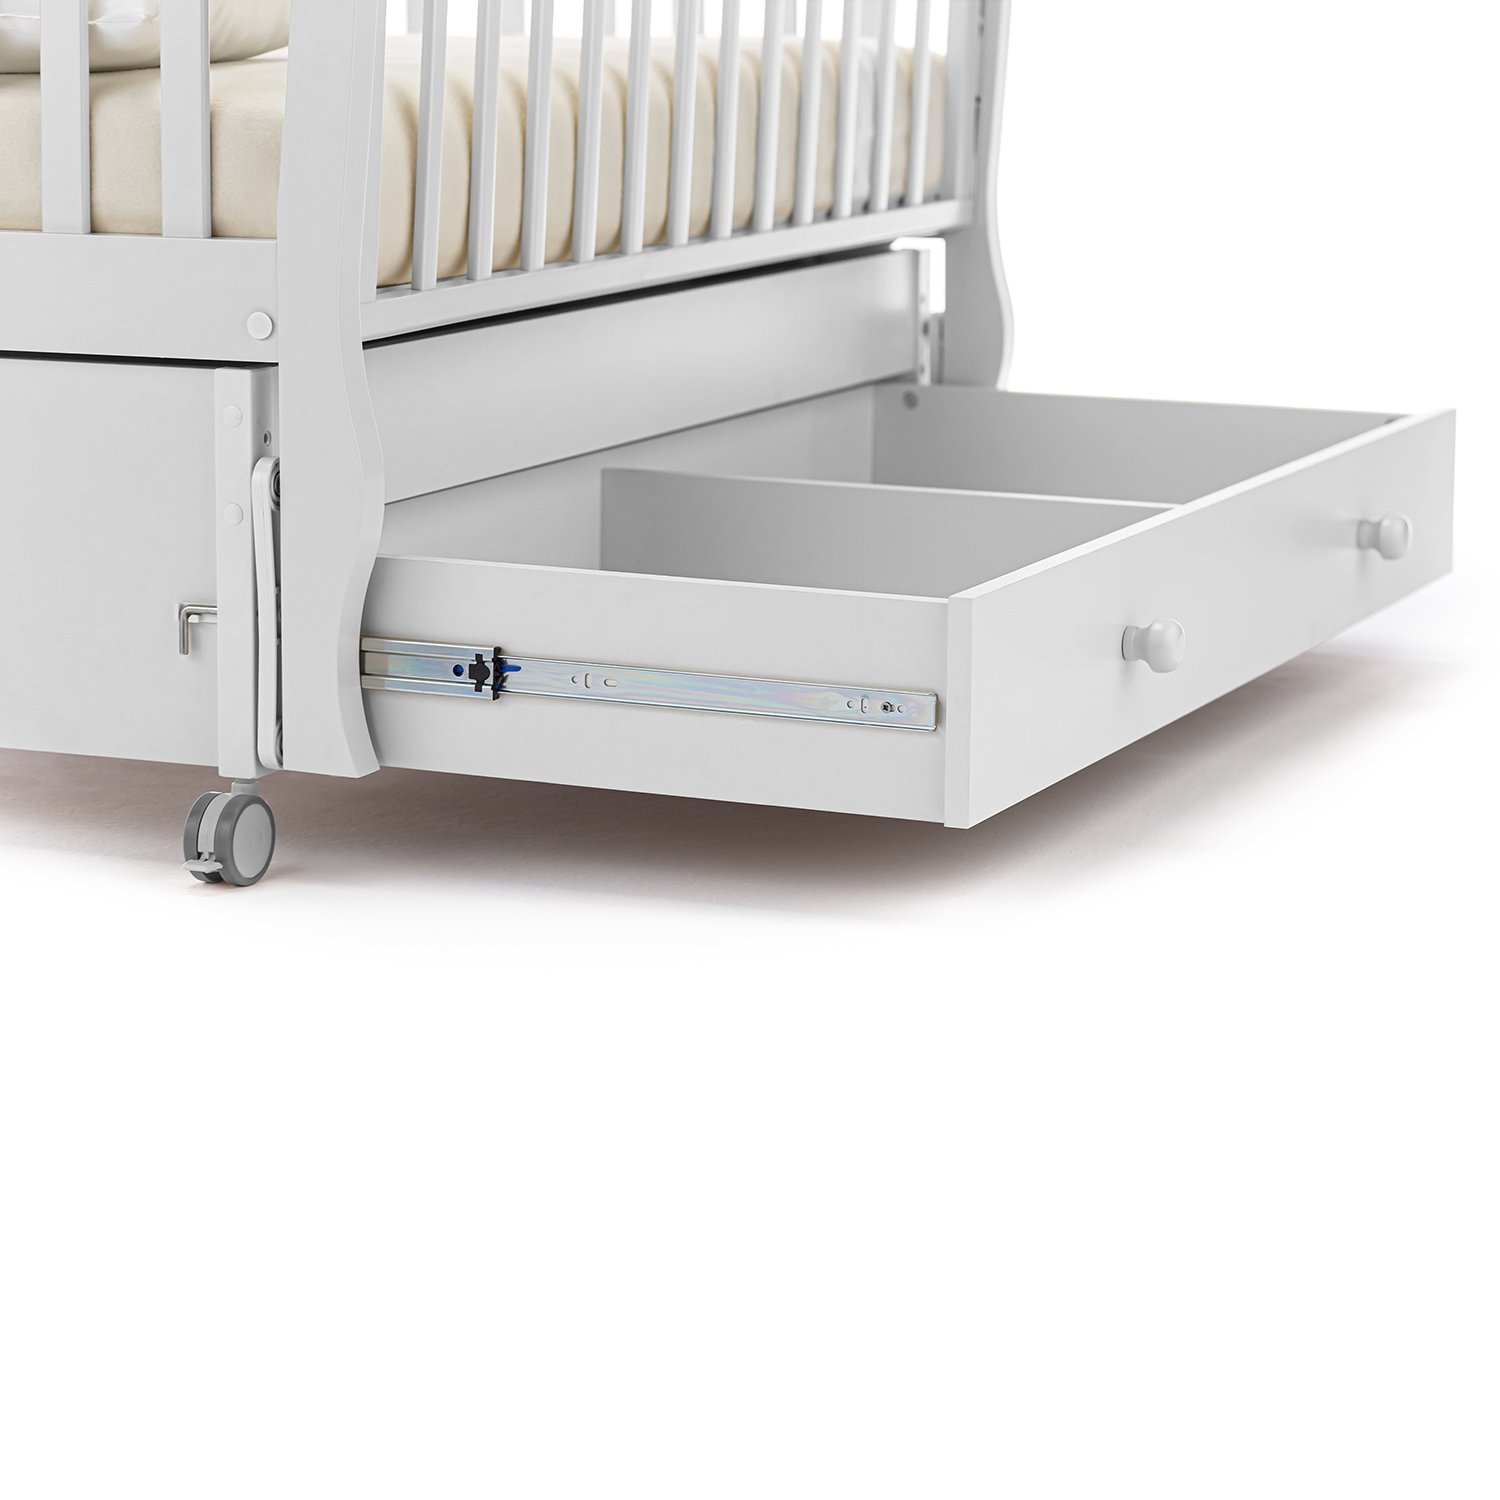 Детская кровать Nuovita Sorriso swing поперечный, цвет - Bianco/Белый  